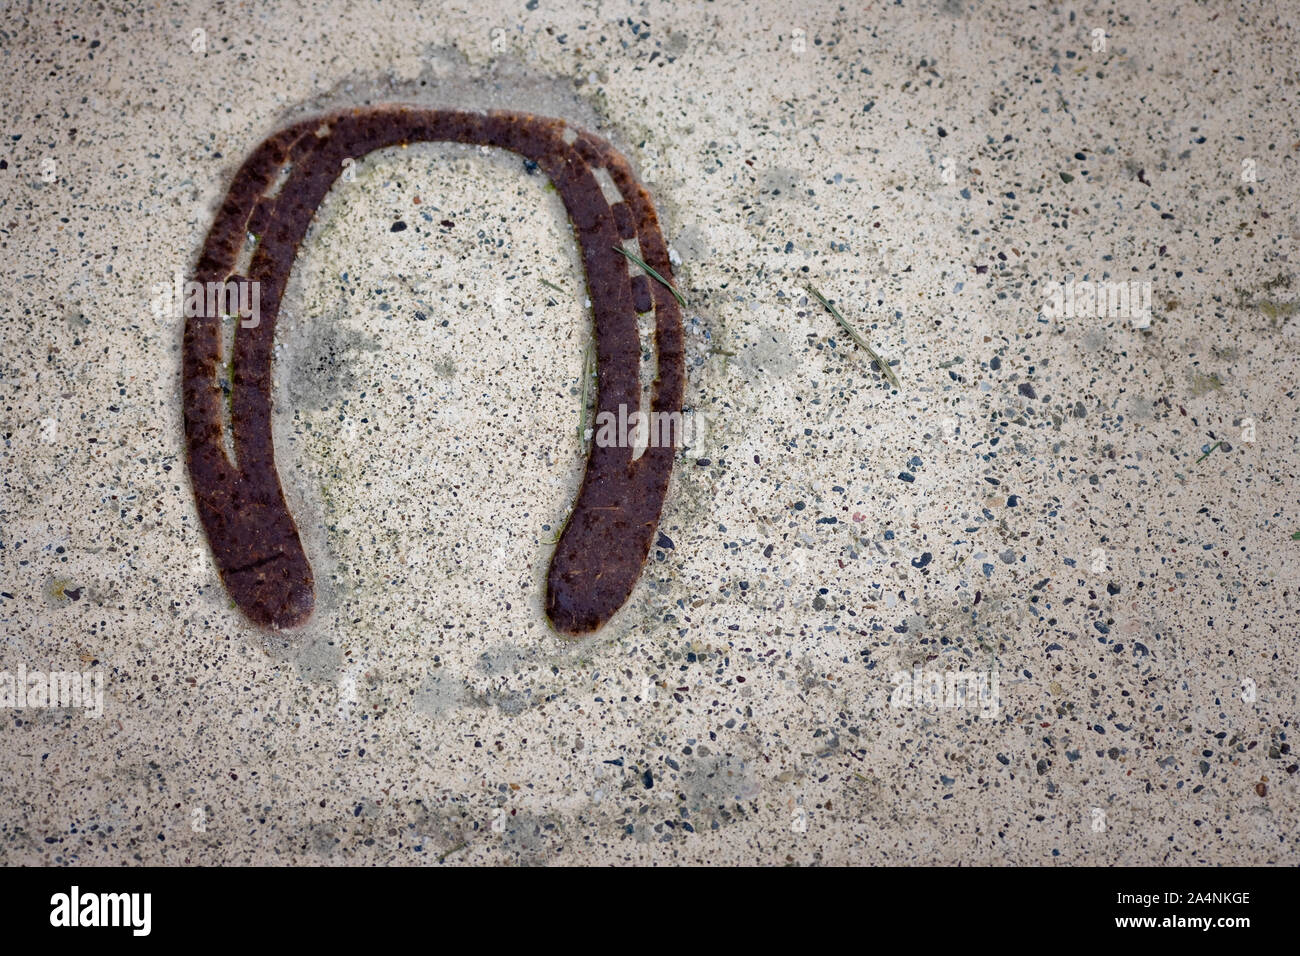 Rusted horseshoe lying on asphalt. Stock Photo